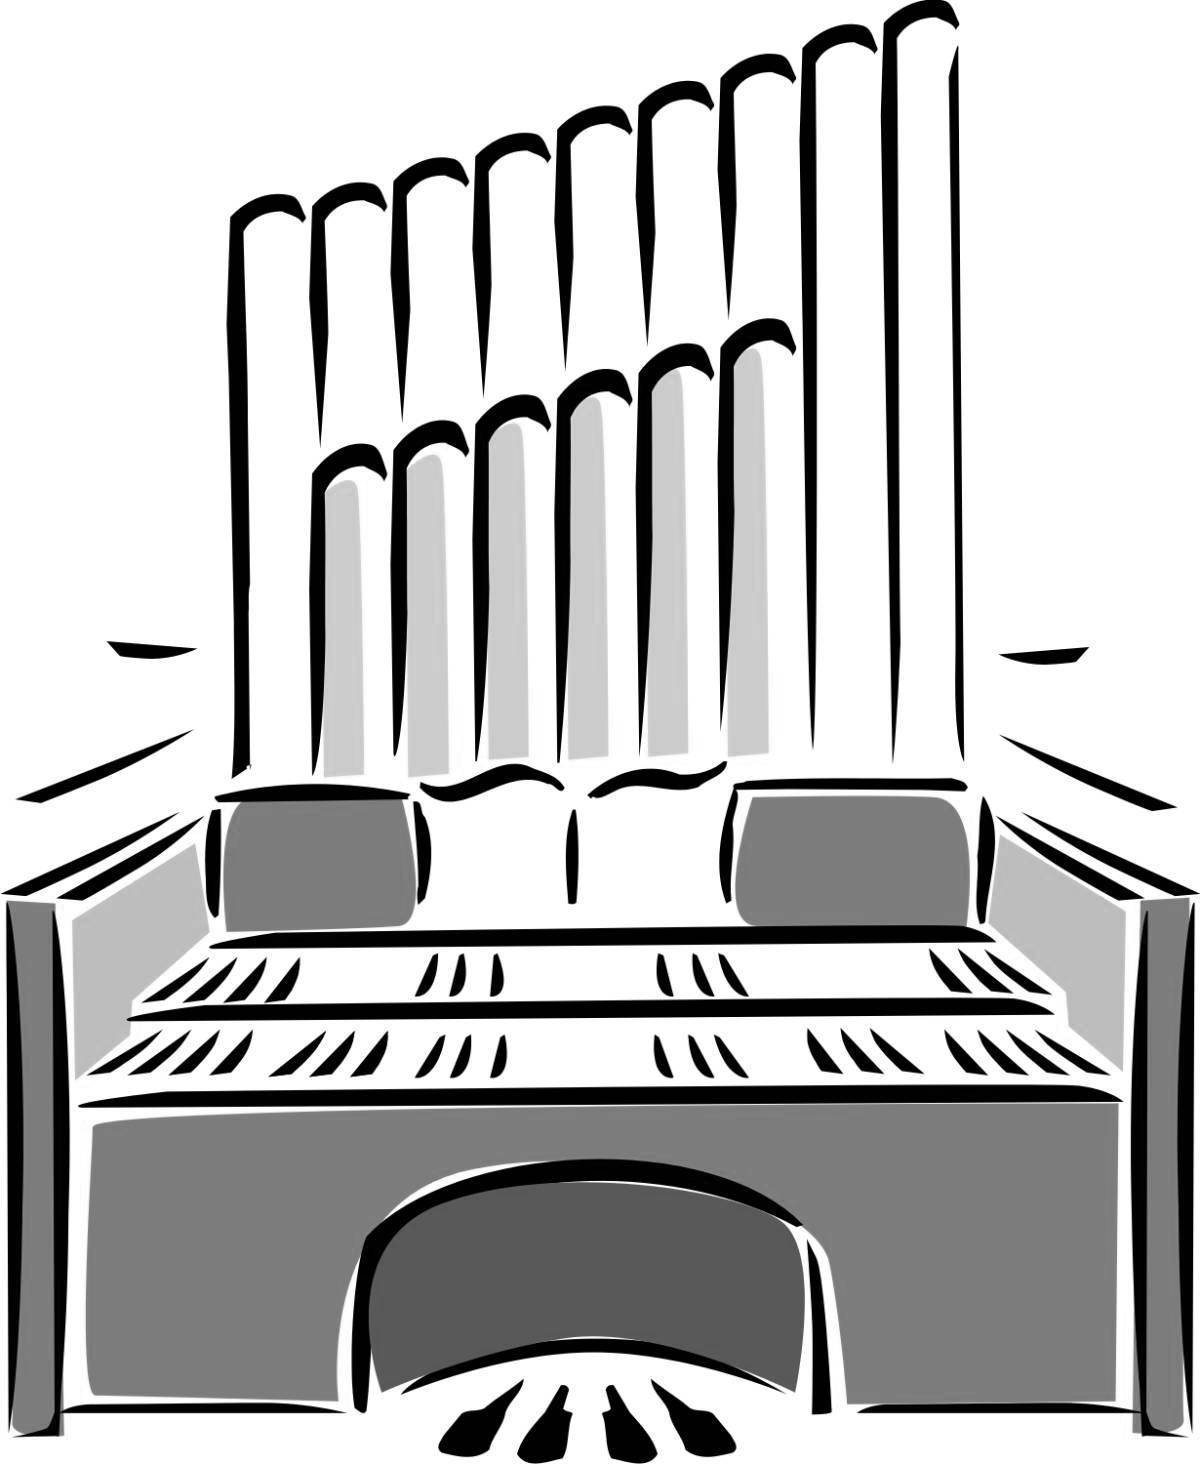 Орган 31 декабря. Орган музыкальный инструмент раскраска. Музыкальный орган рисунок для детей. Нарисовать орган музыкальный. Орган музыкальный инструмент раскраска для детей.